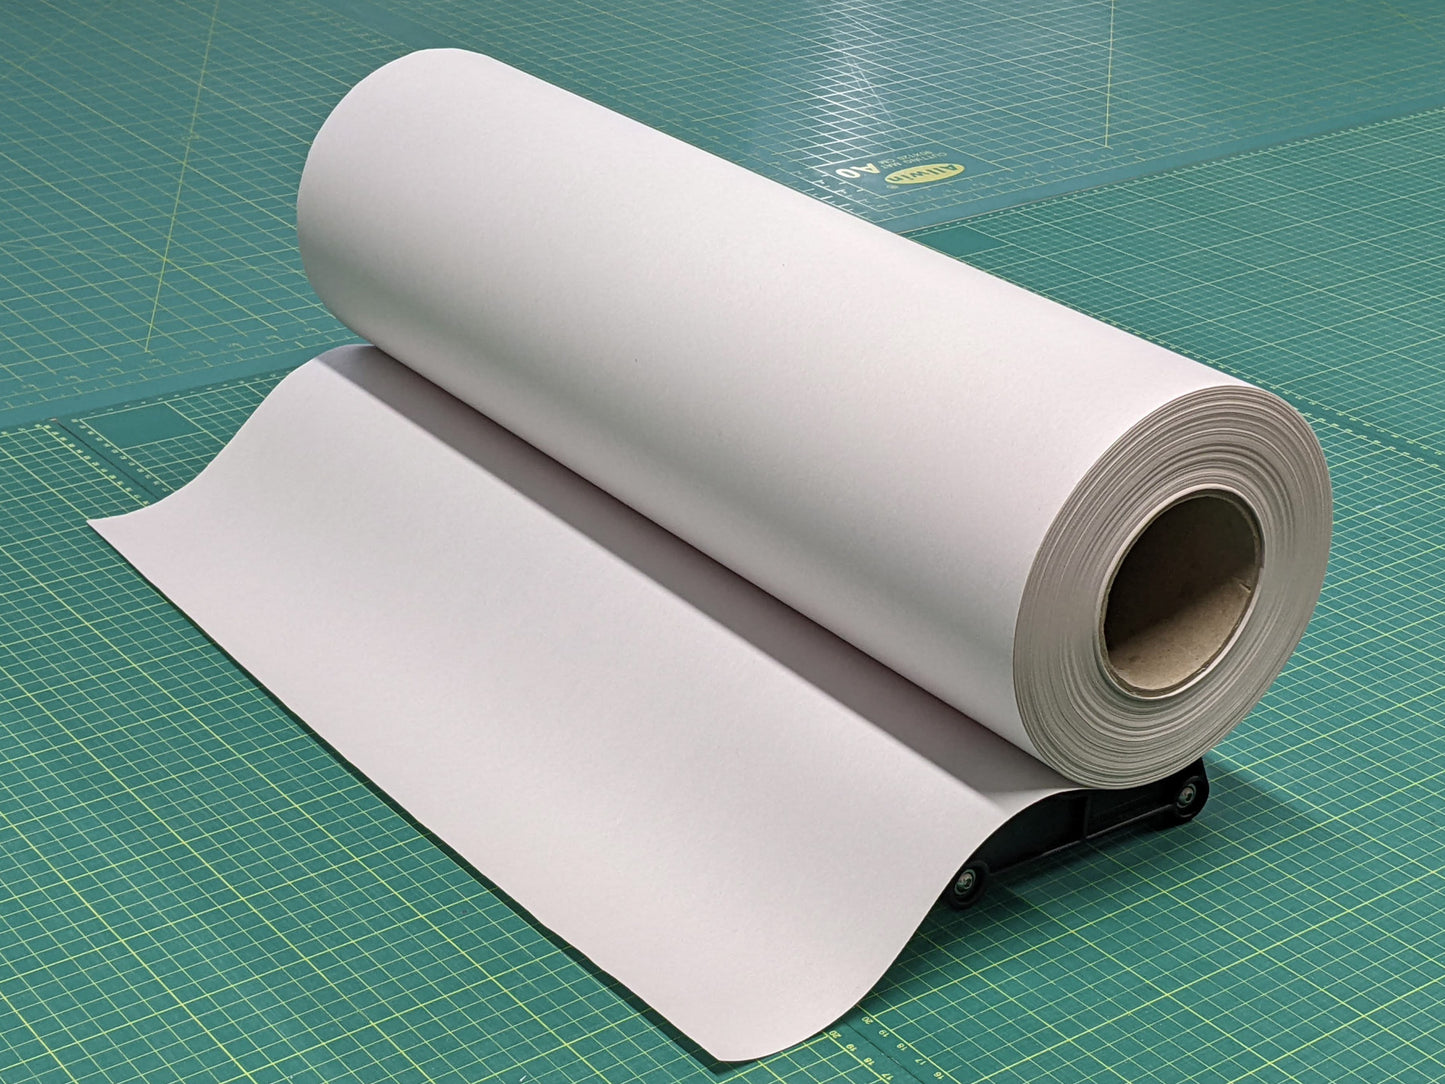 Roll holder for Vinyl, Film, Paper Material